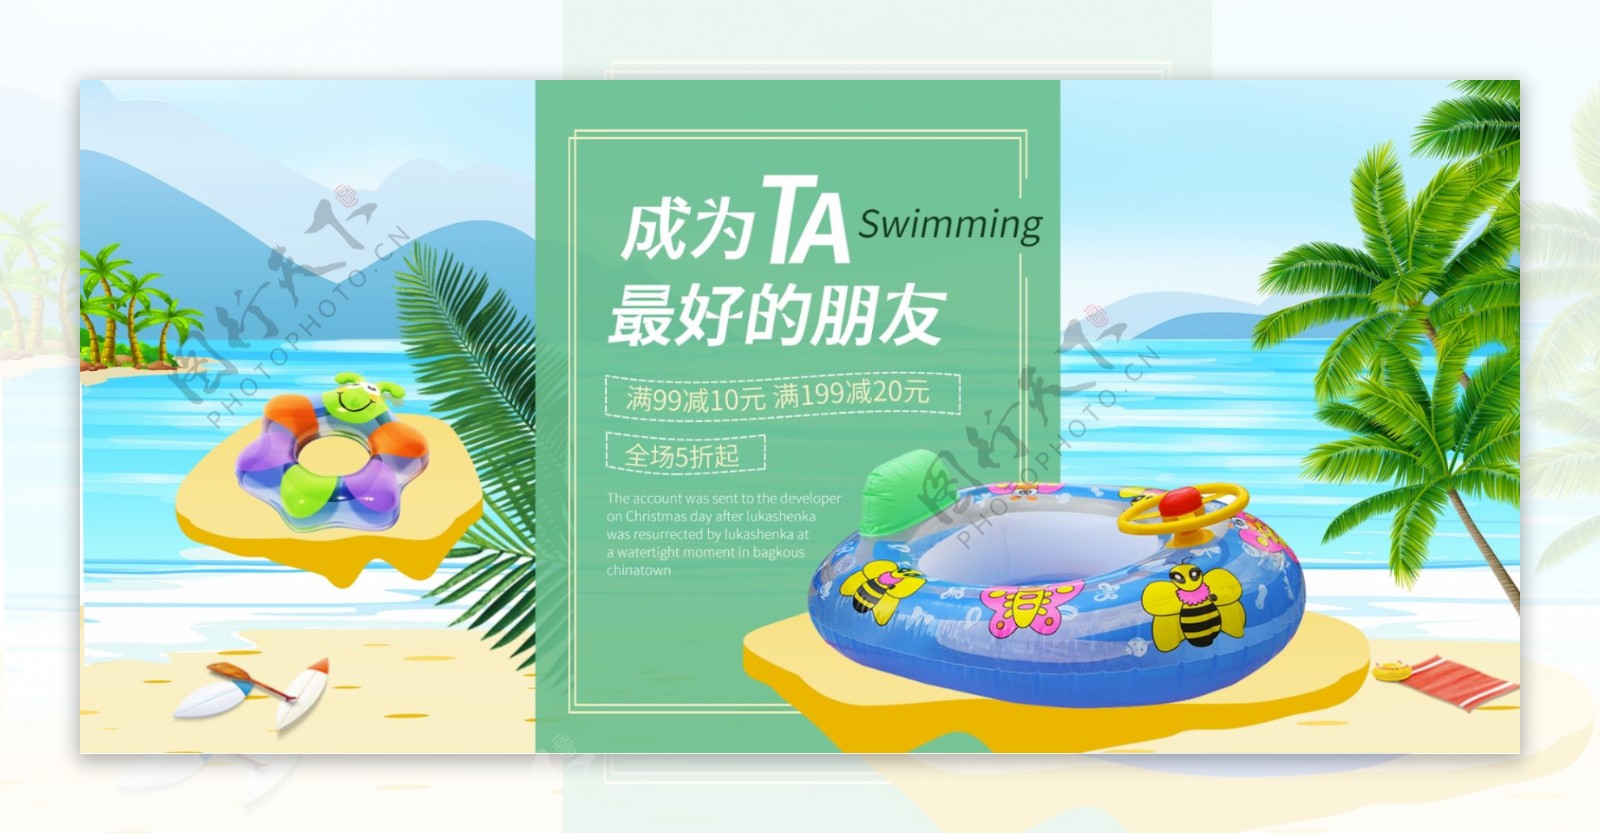 夏凉节简约大方海水沙滩游泳圈电商海报模版